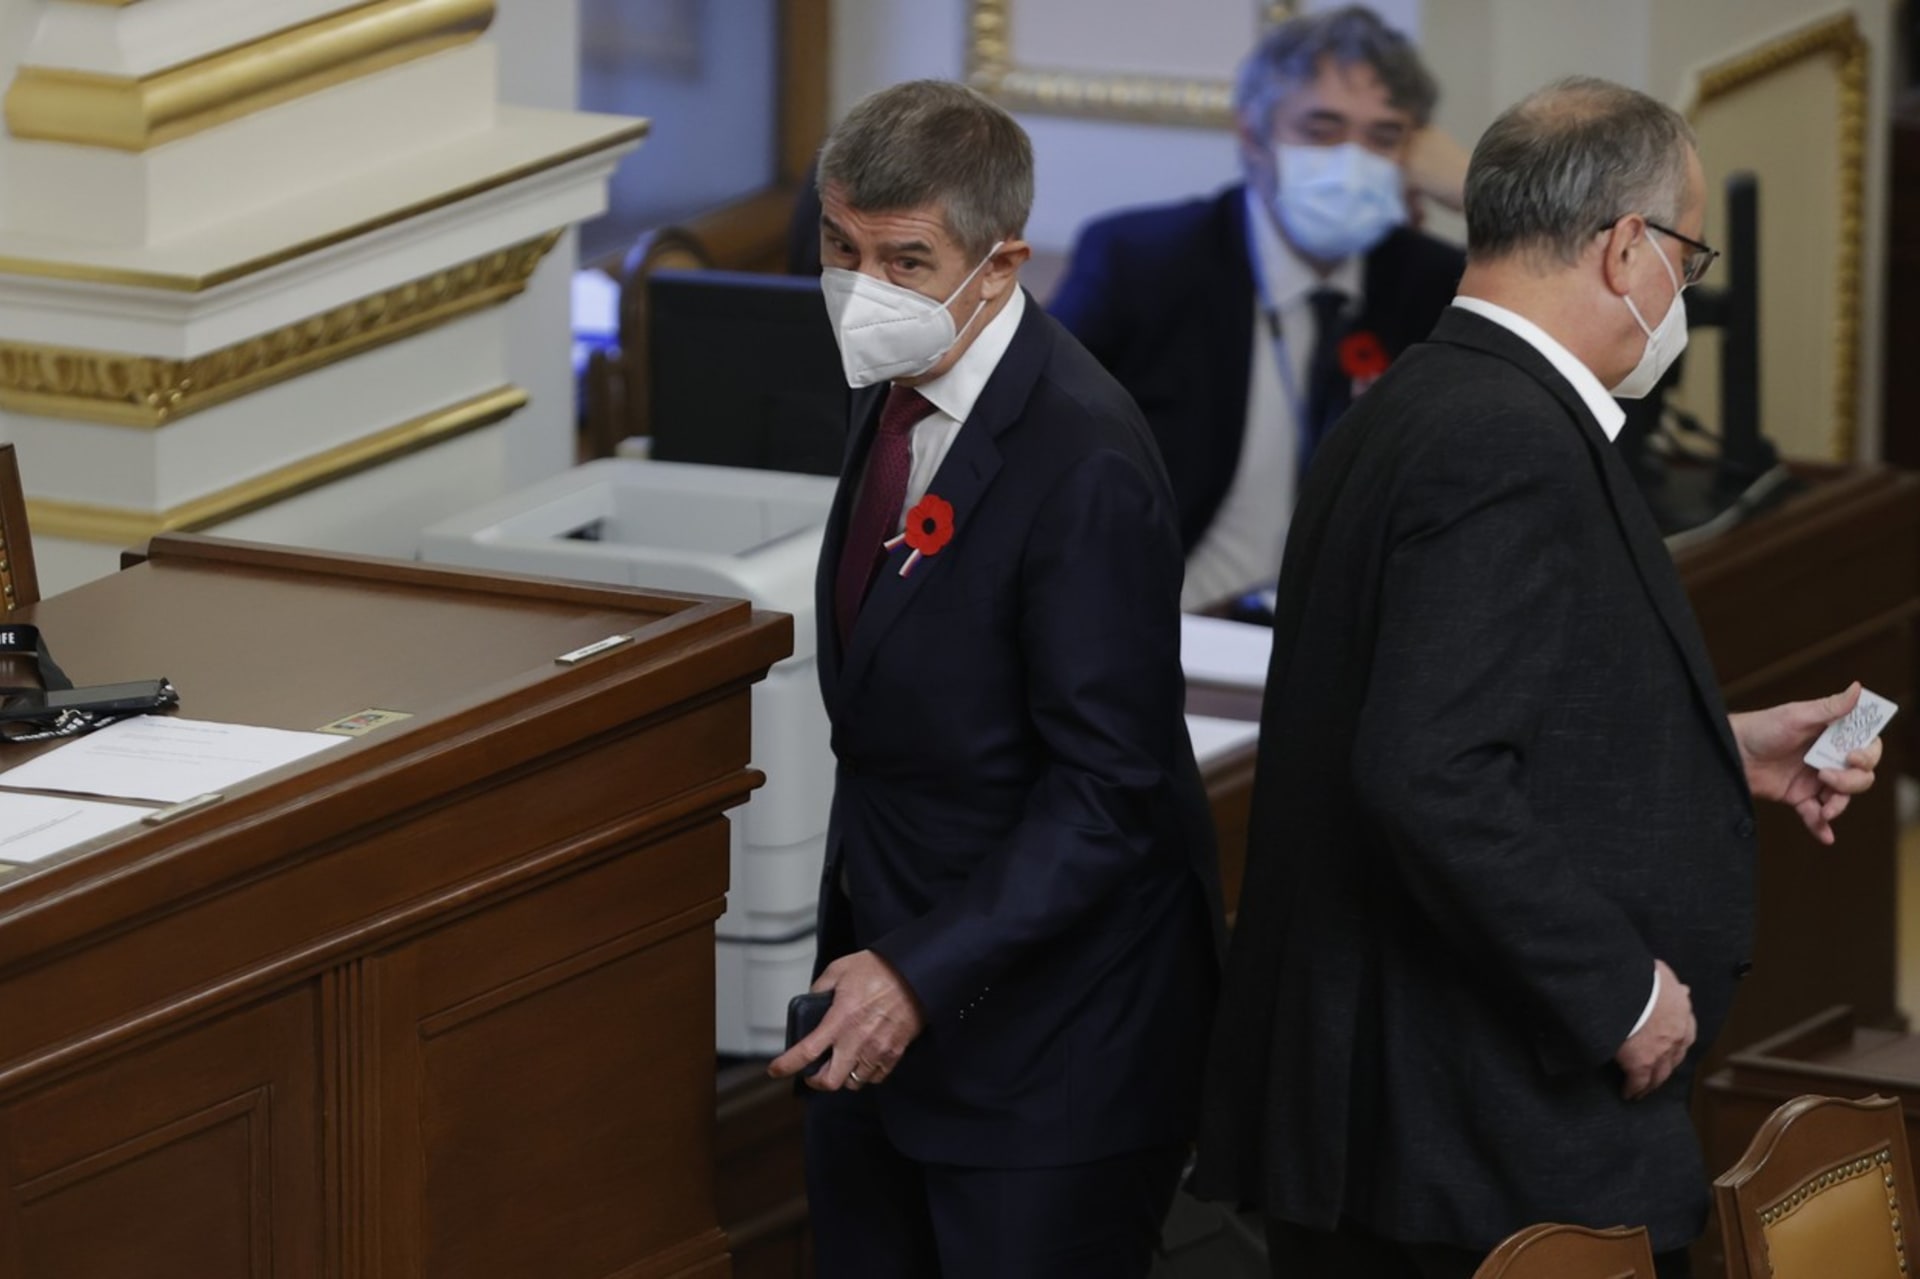 Premiér Andrej Babiš (ANO) se zatím nemusí omlouvat bývalému poslanci Miroslavu Kalouskovi (TOP 09) za výroky, které o něm pronesl při debatě ve Sněmovně.